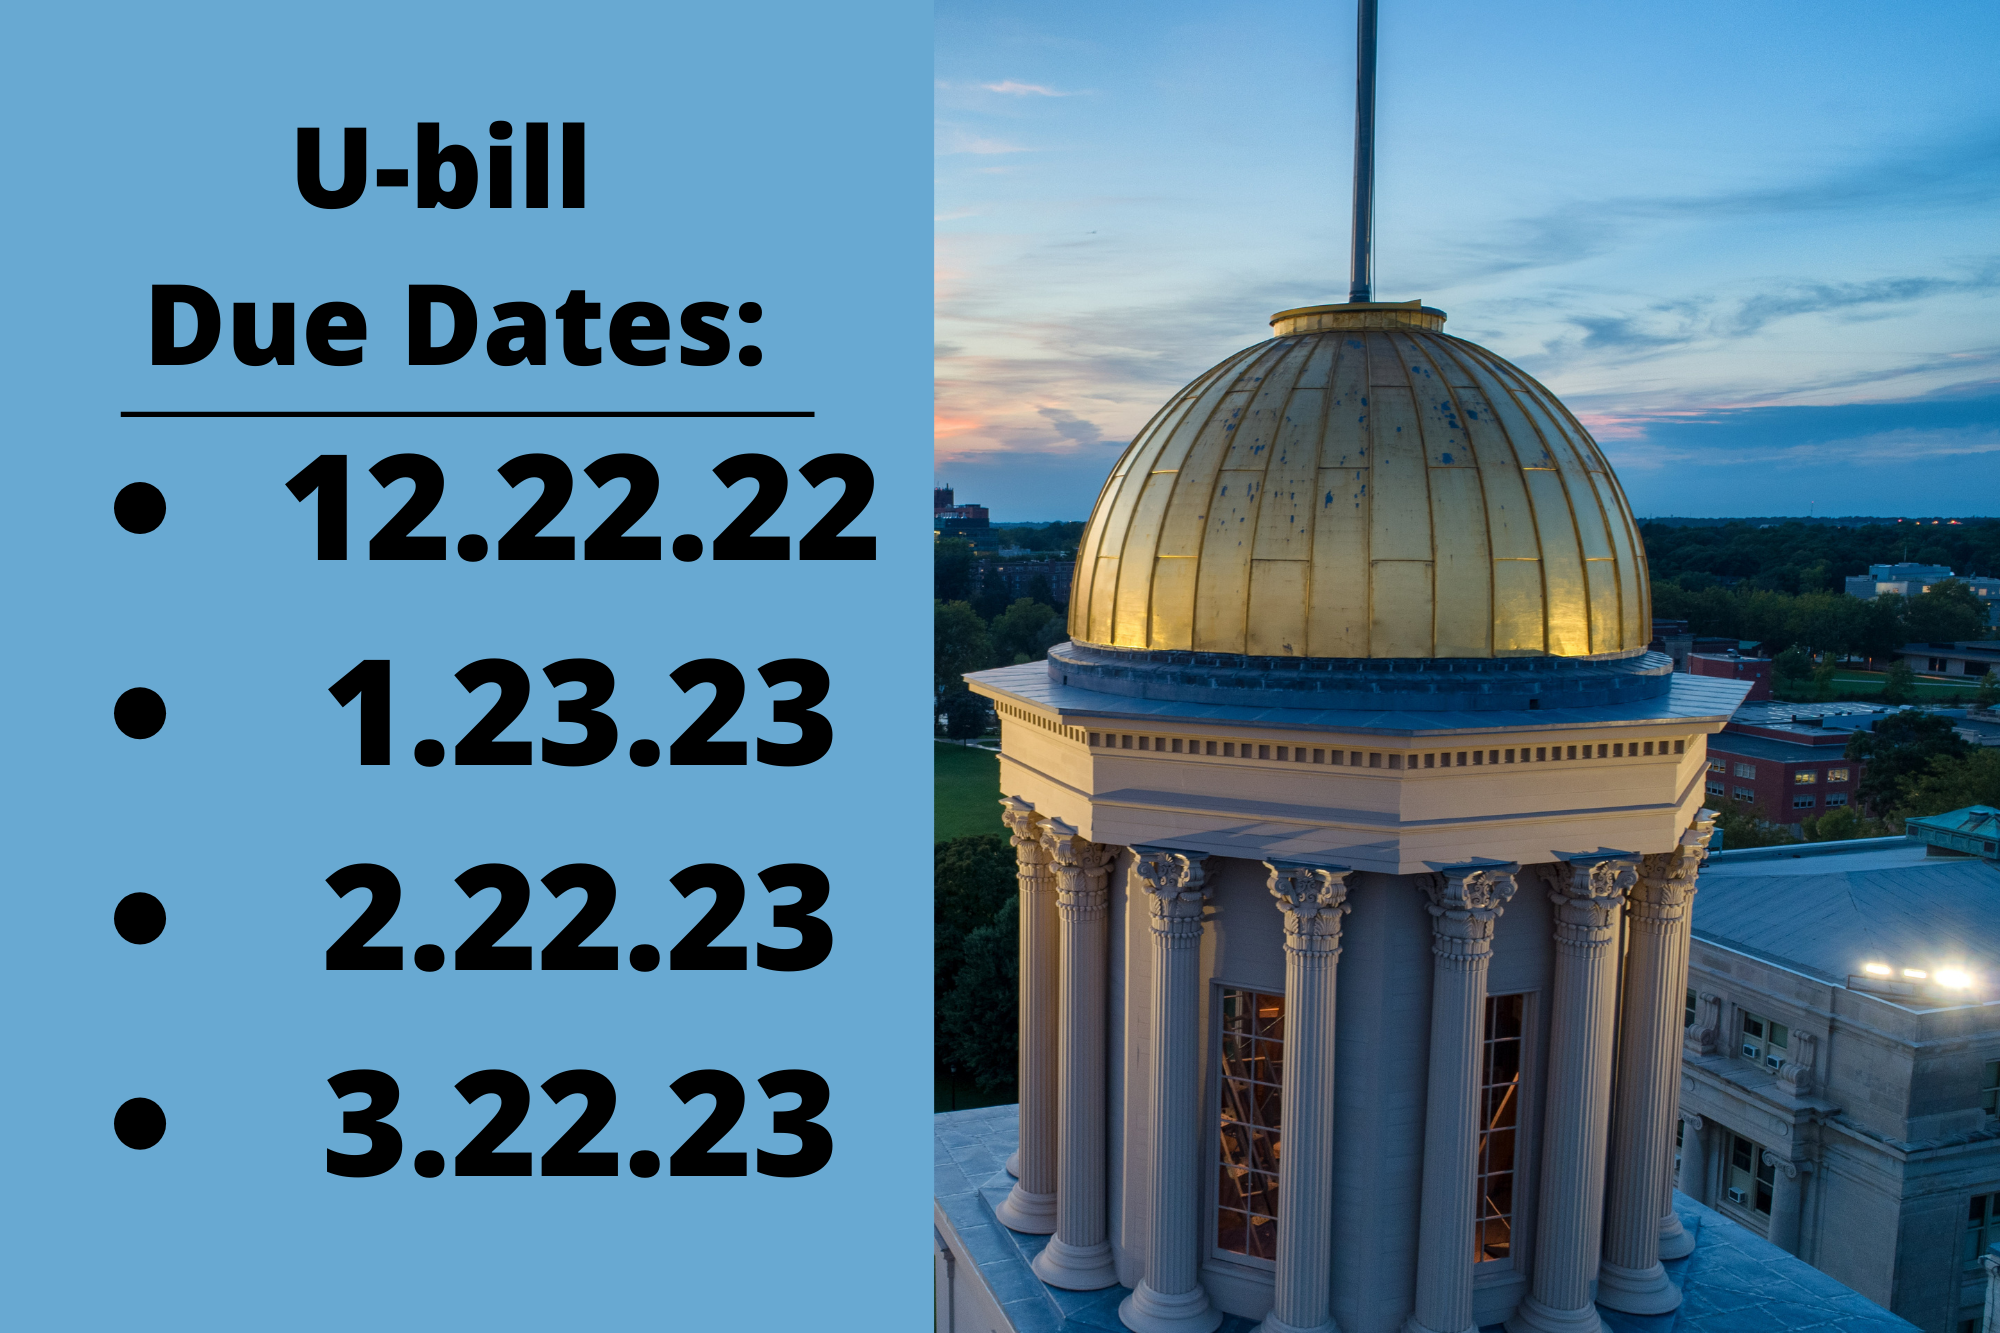 u-bill due dates